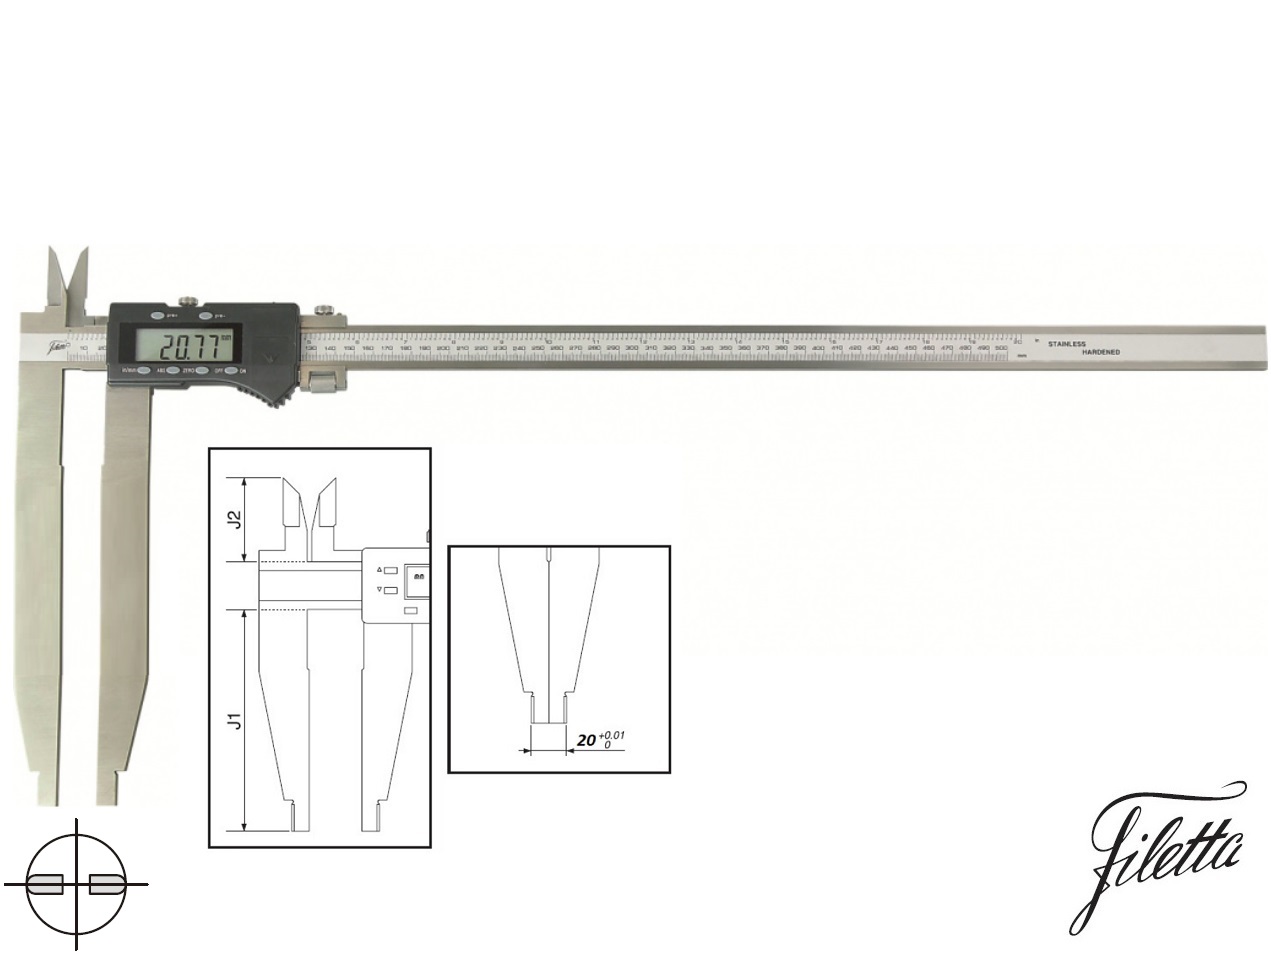 Digitální posuvné měřítko Filetta 0-600/300 mm s měřicími nožíky pro vnitřní měření